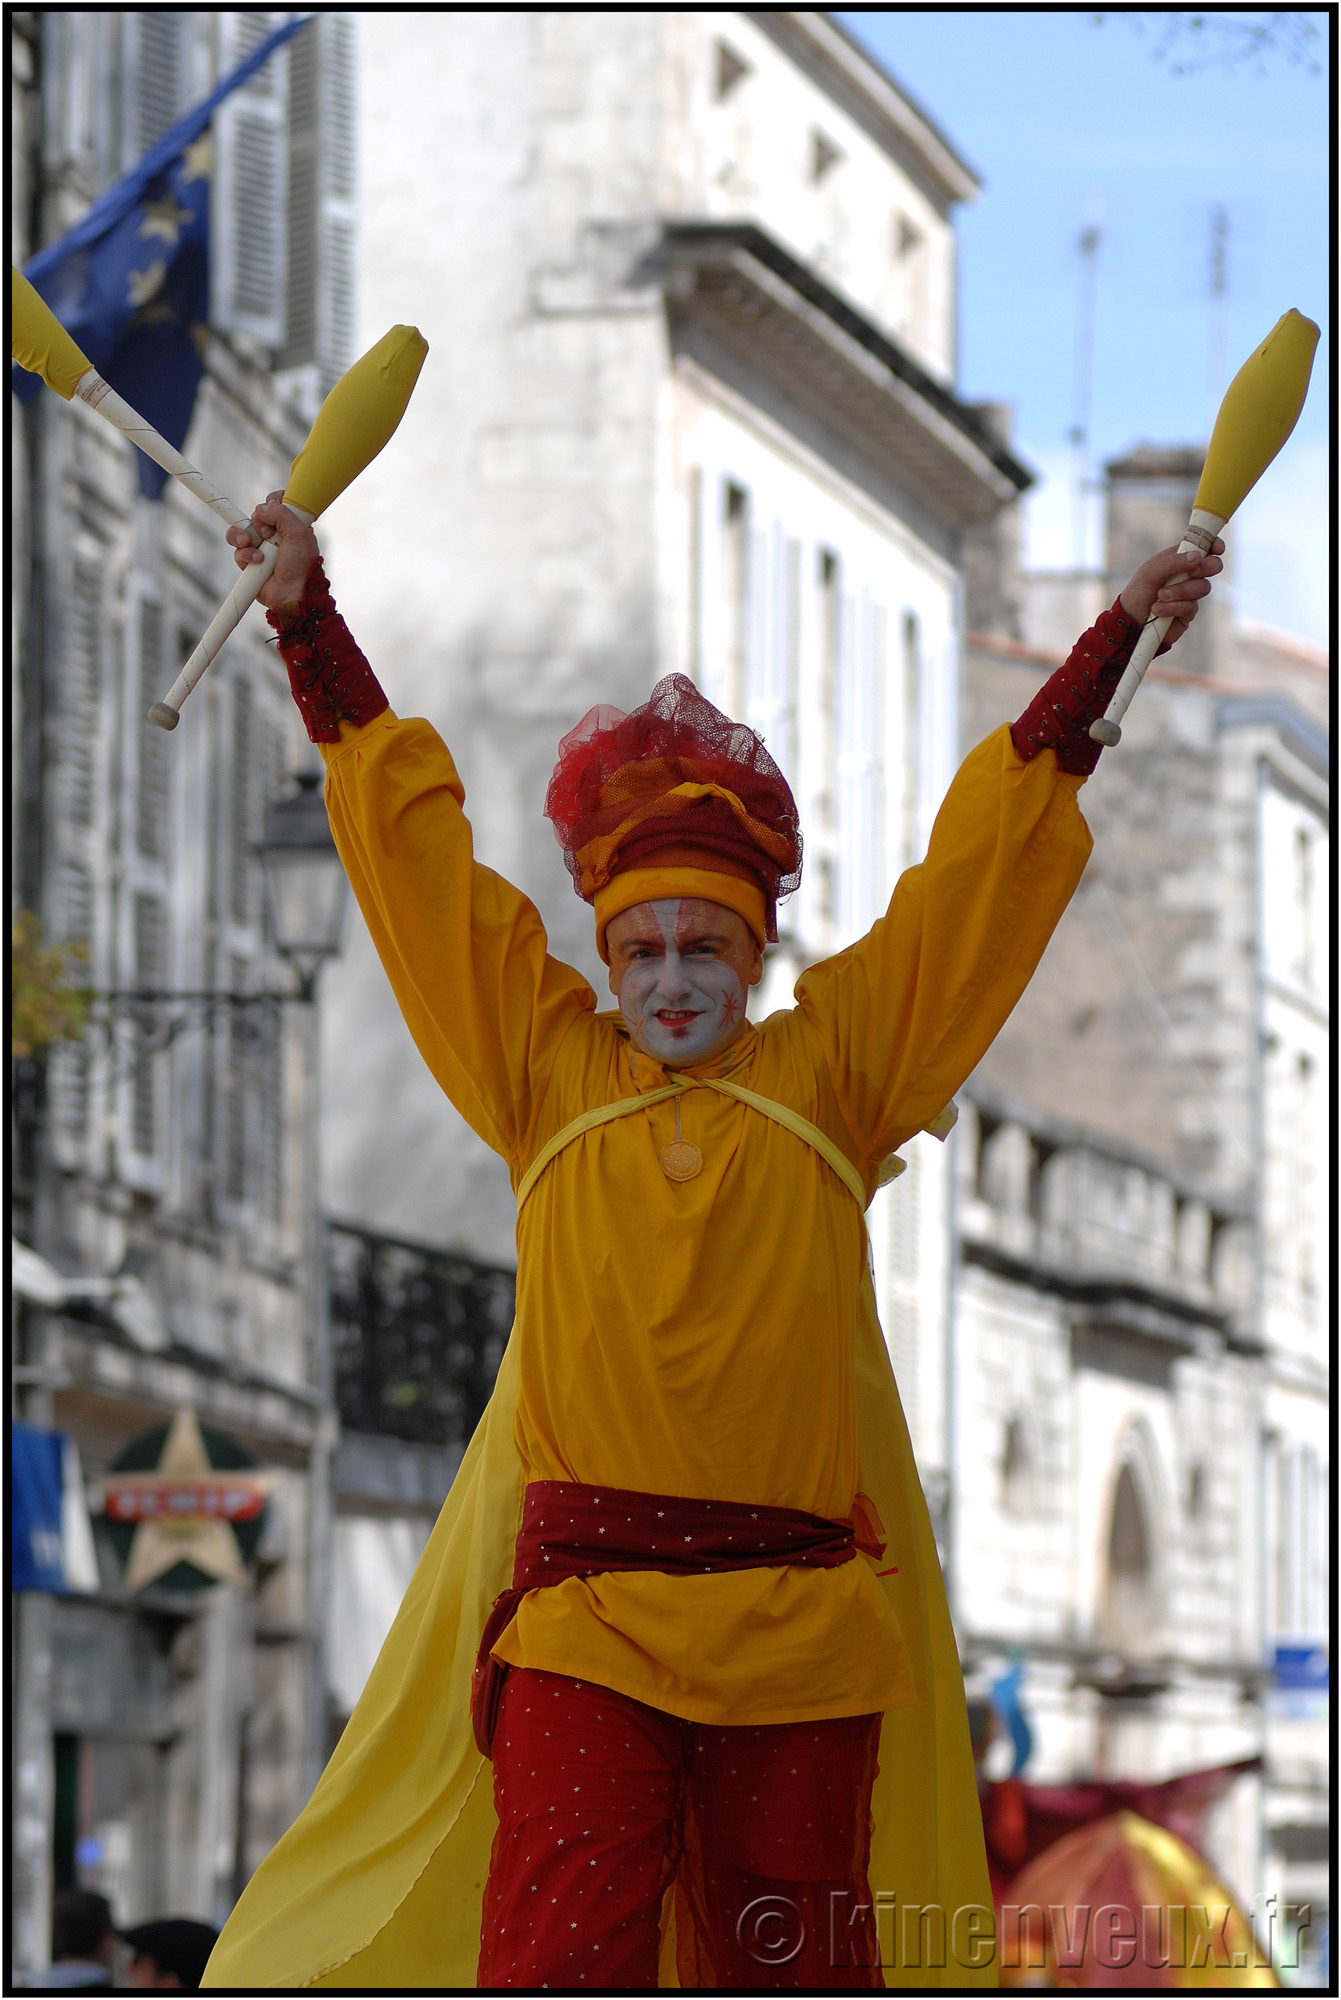 kinenveux_65_carnaval2015lr.jpg - Carnaval des Enfants 2015 - La Rochelle